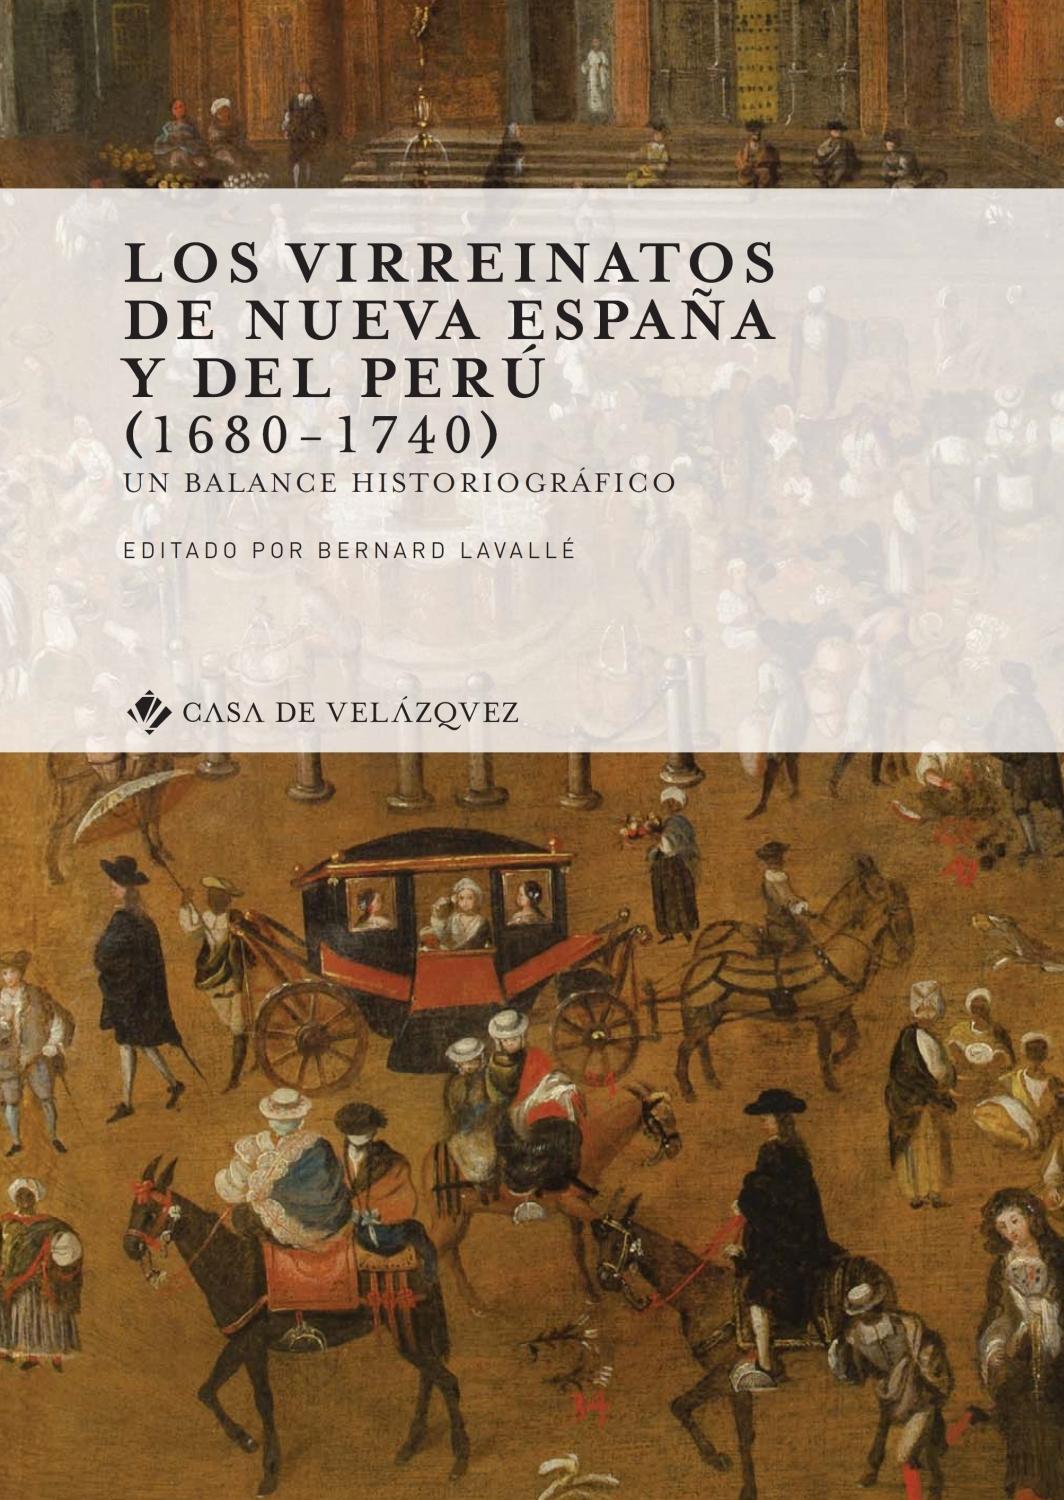 LOS VIRREINATOS DE NUEVA ESPAÑA Y DEL PERÚ (1680-1740) "UN BALANCE HISTORIOGRÁFICO"